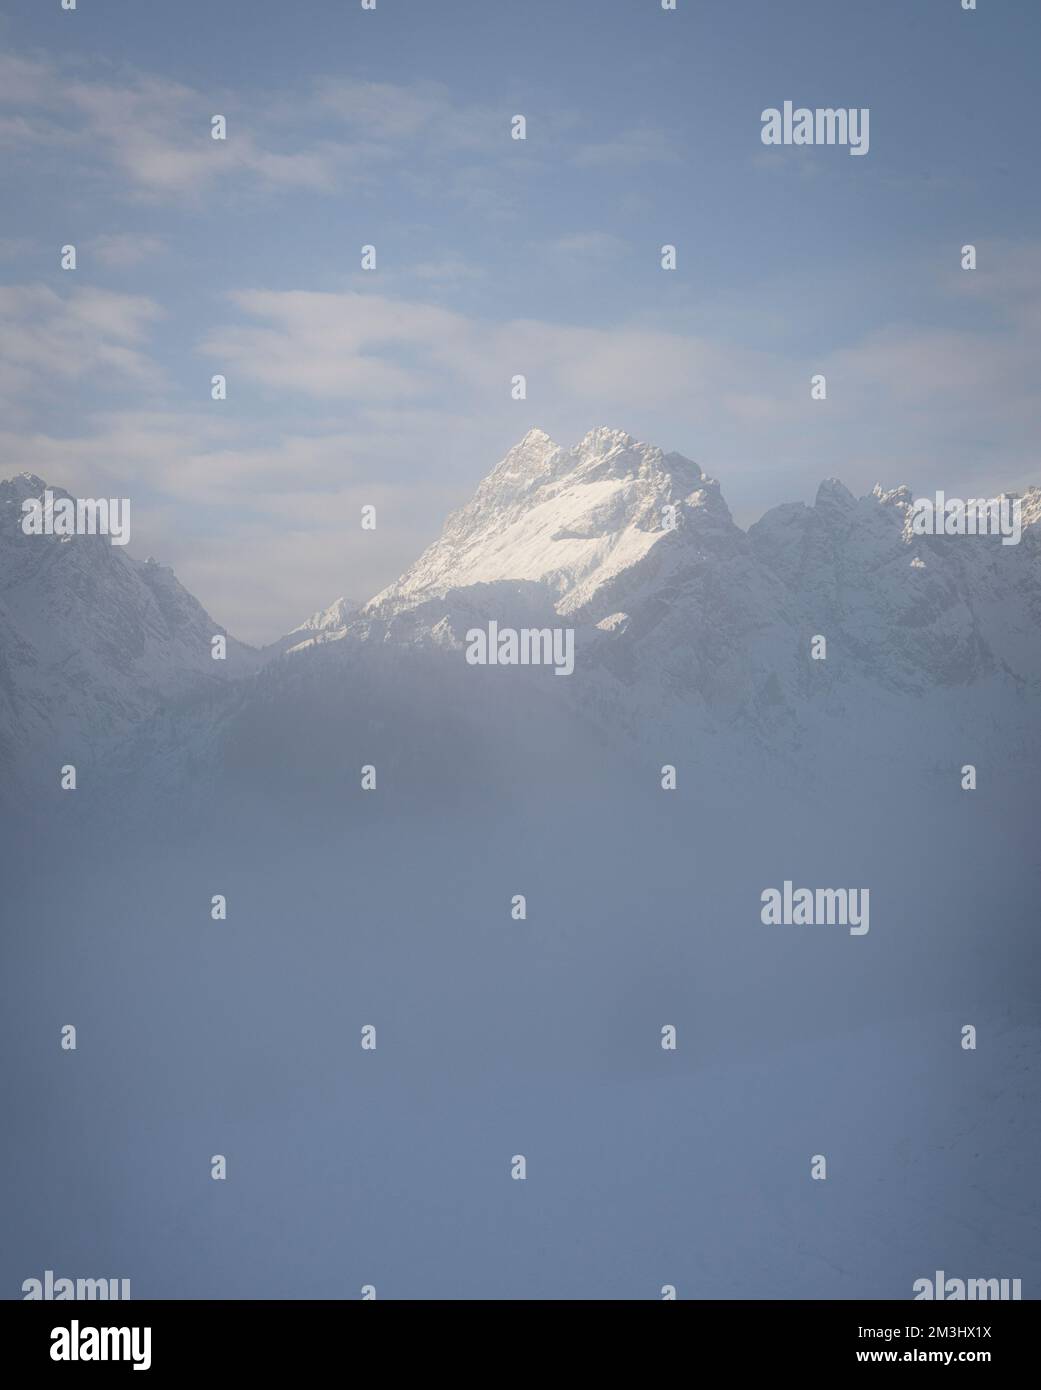 la cima innevata di una montagna emerge dalla nebbia mattutina in un paesaggio alpino Foto Stock